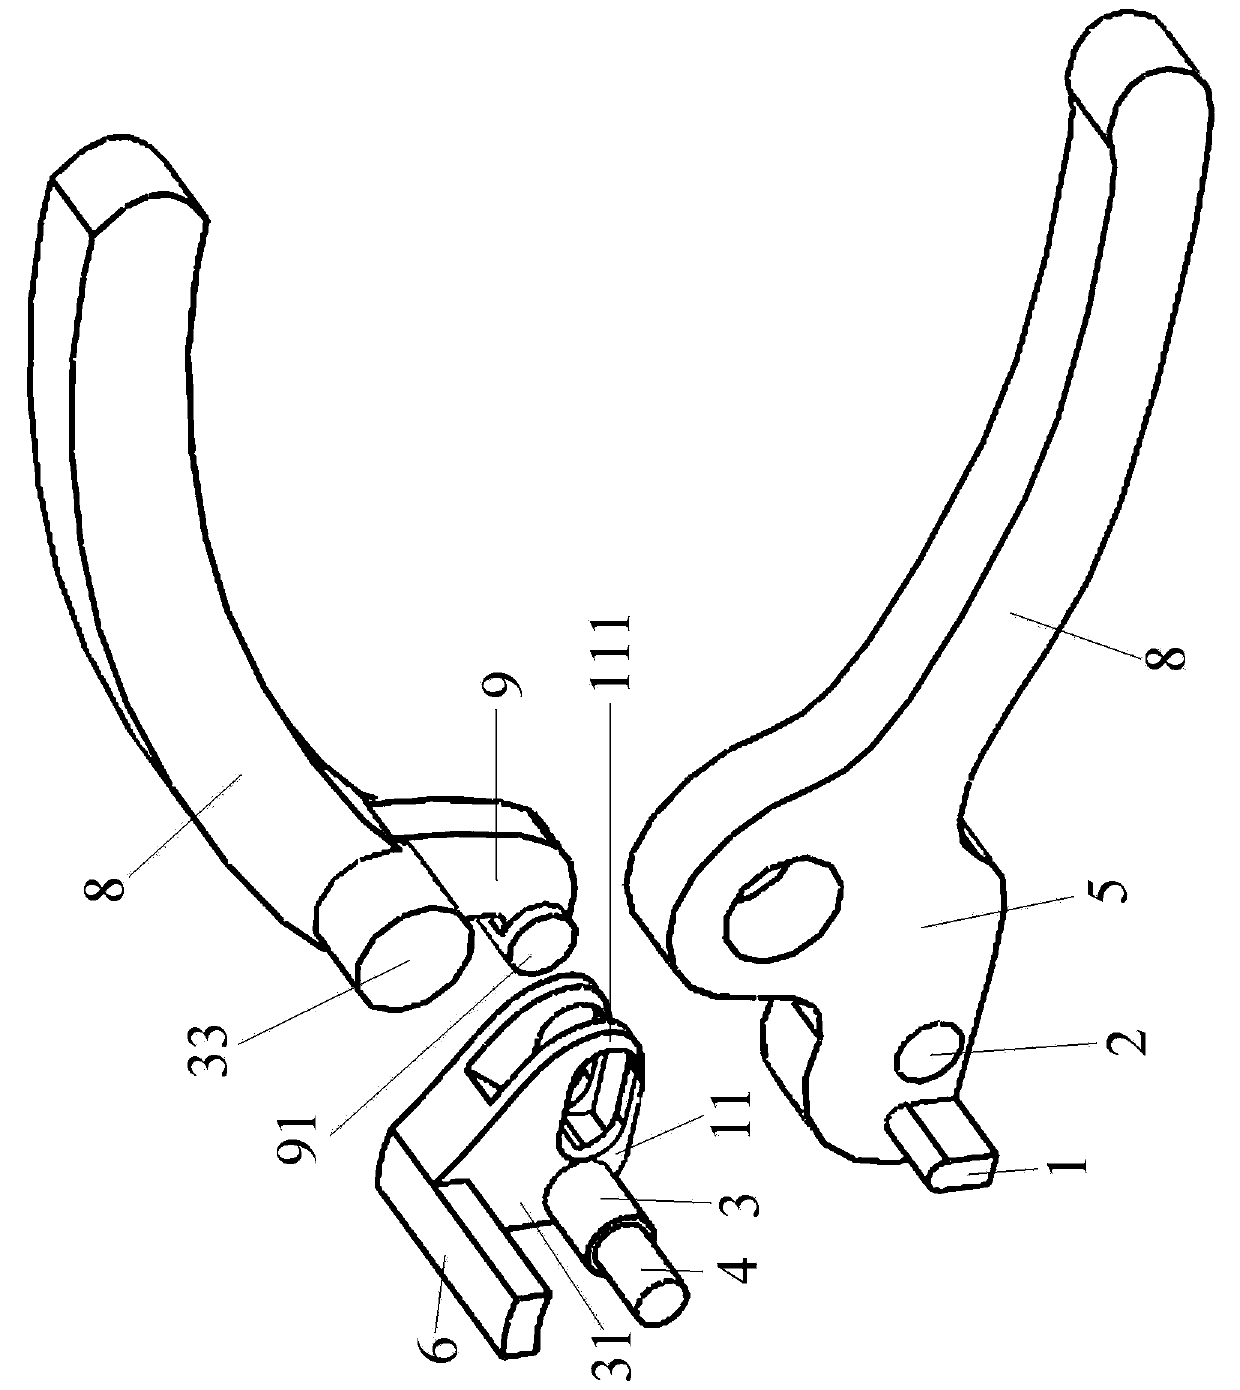 Orthopedic kirschner pin bending device